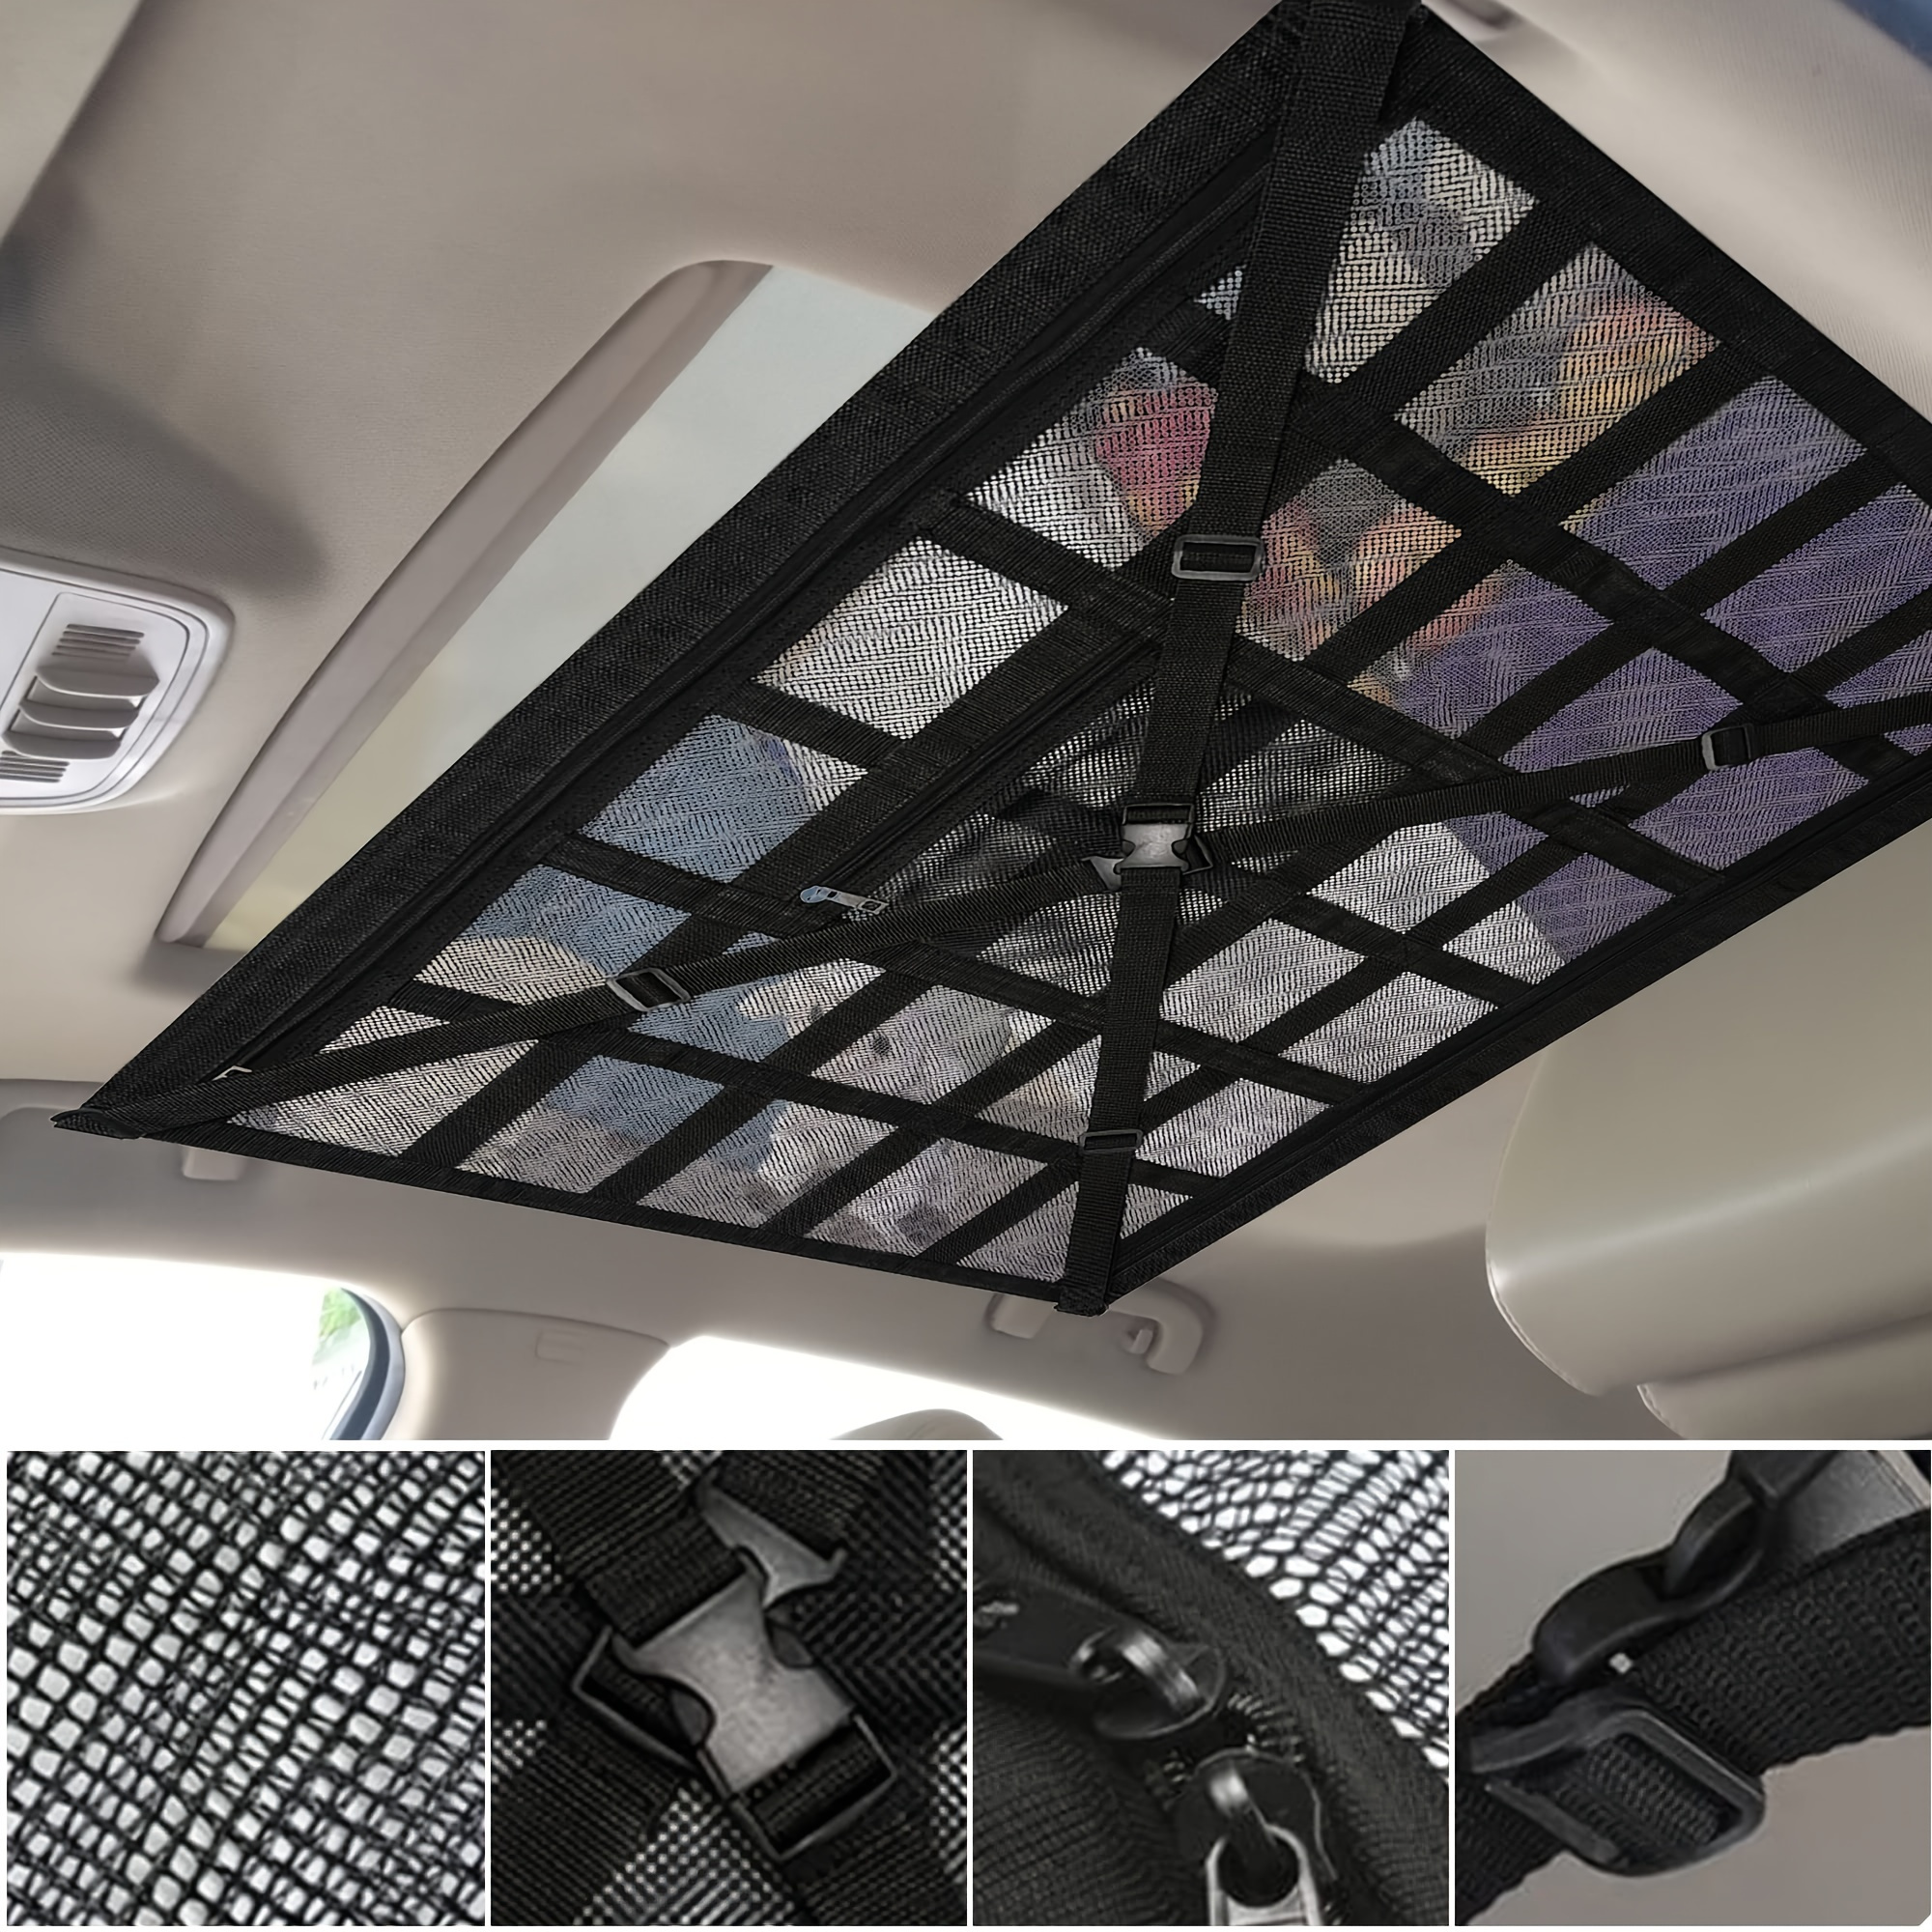  Red de carga organizadora de cama para maletero, red de  almacenamiento de malla con 4 ganchos de metal, red de carga resistente de  43.3 x 11.8 pulgadas para SUV, automóvil, Toyota